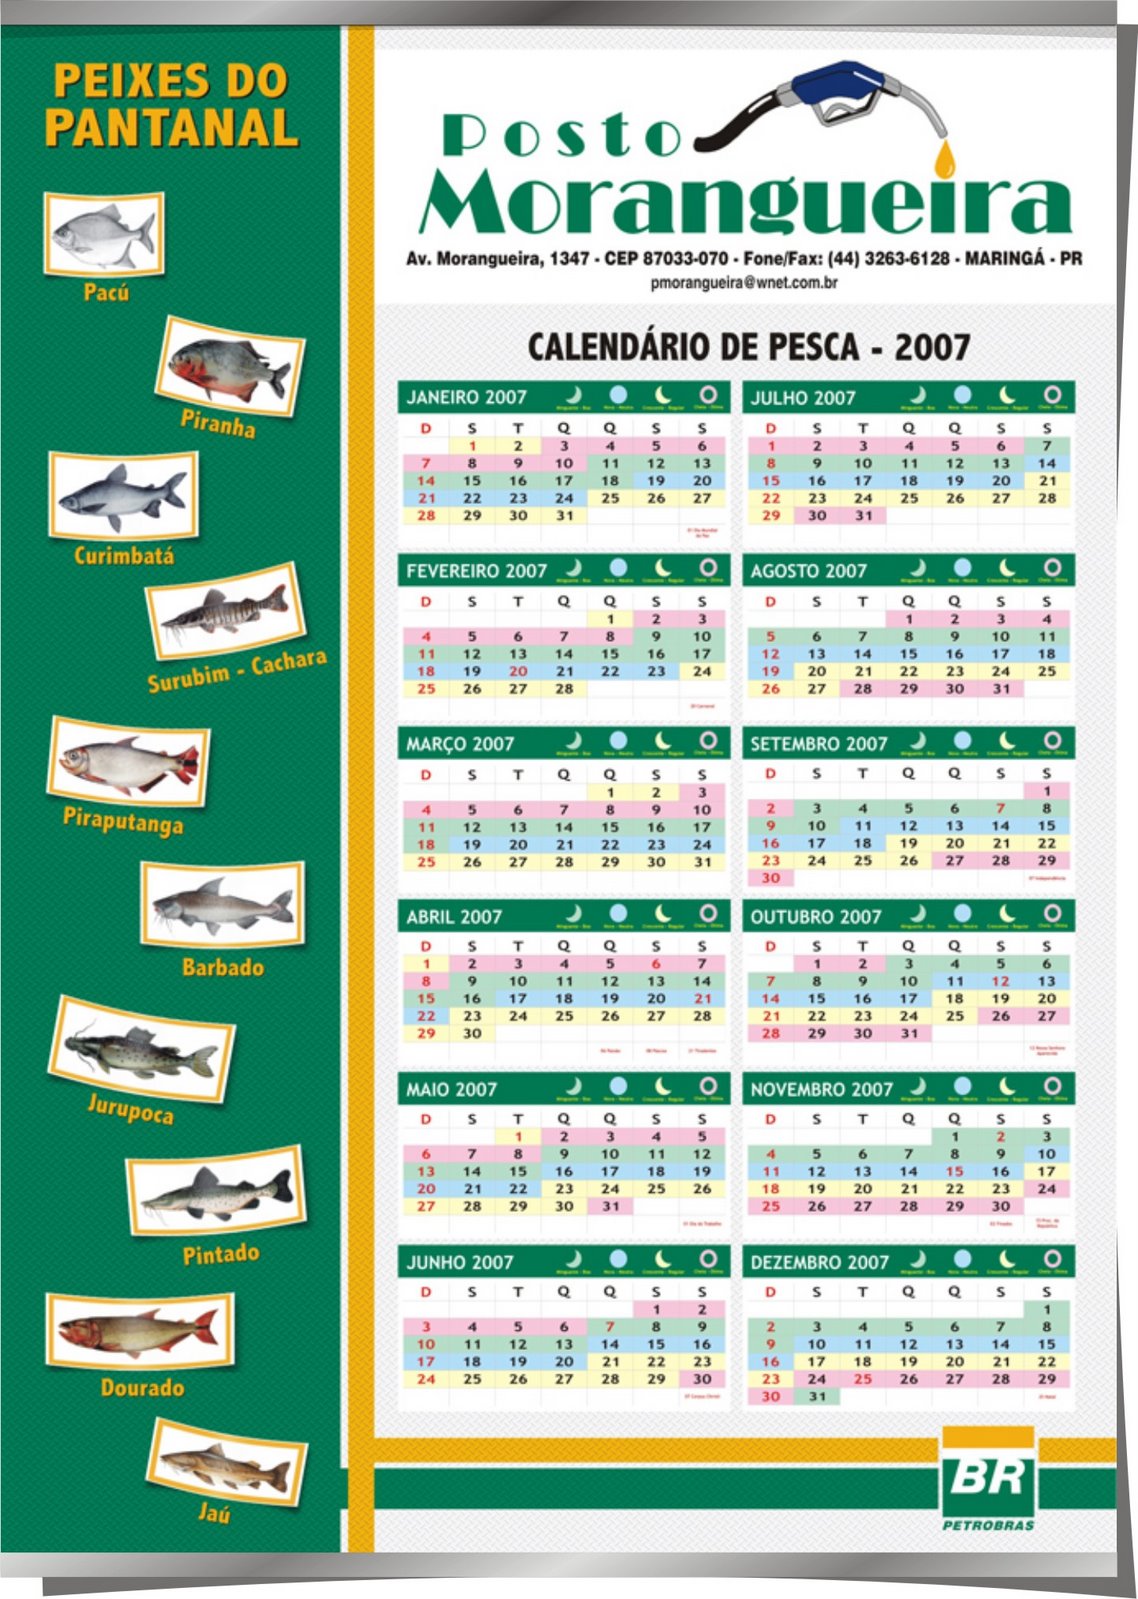 [Posto_Morangueira_Calendario.jpg]